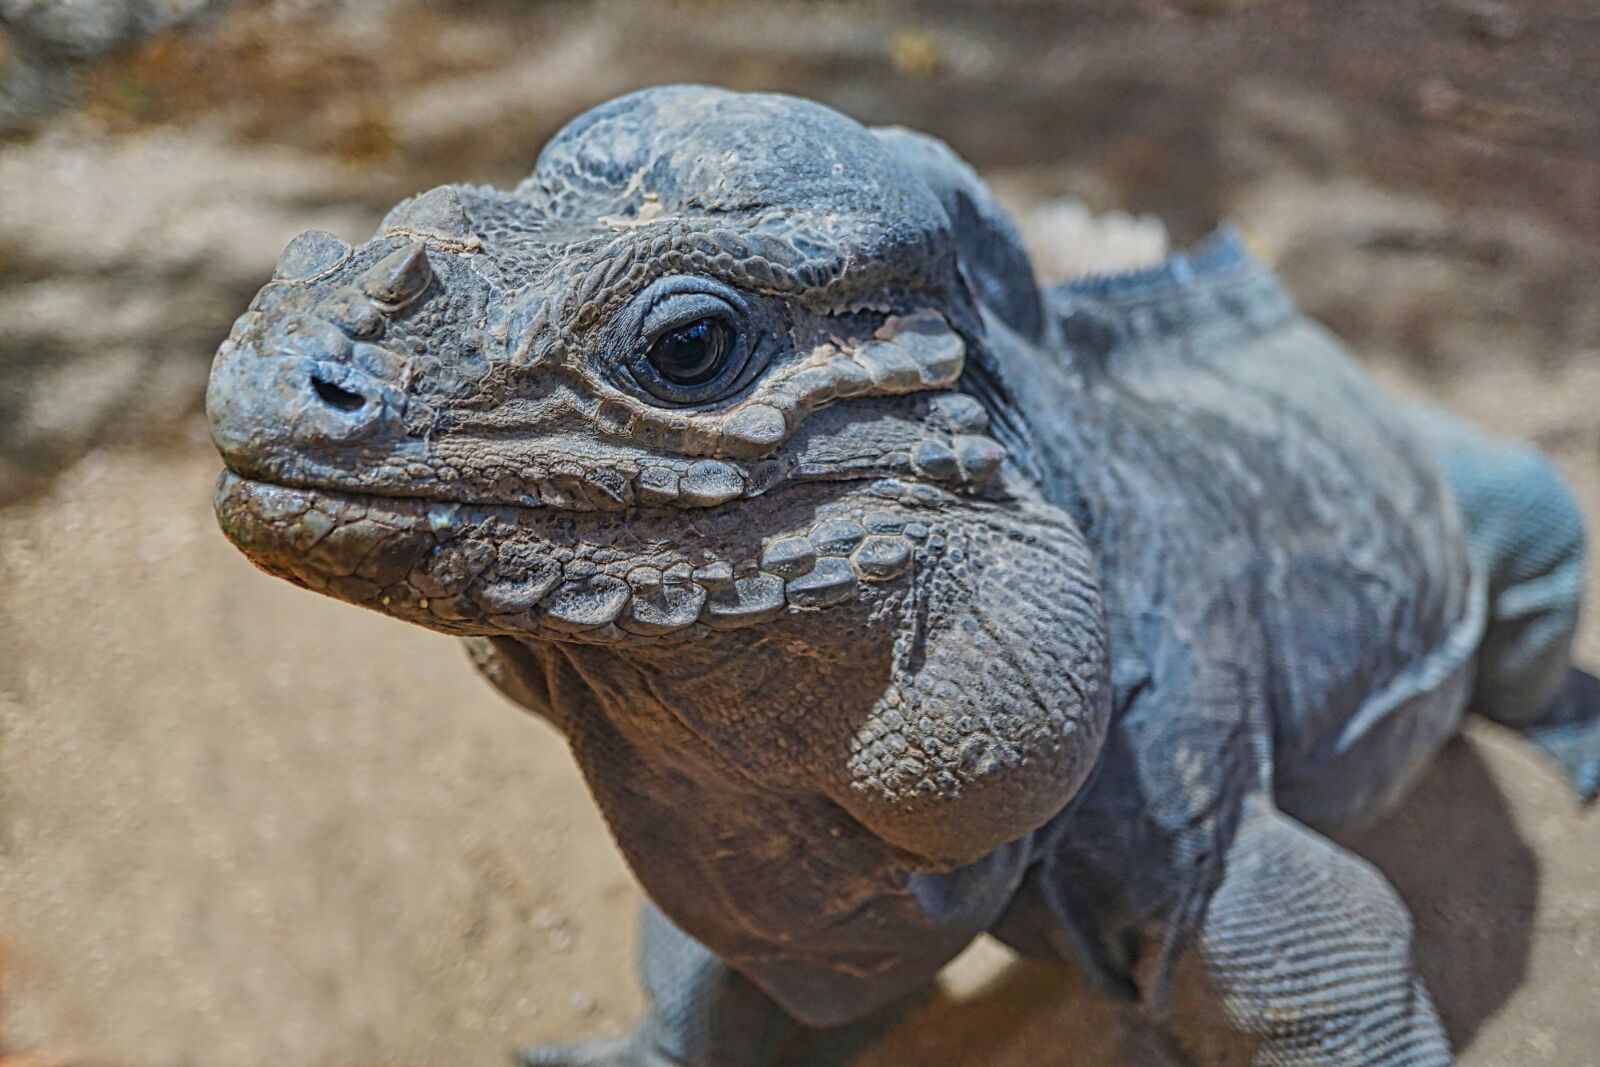 Sony a5100 + Sony E 30mm F3.5 Macro sample photo. Rhinoceros iguana, iguana, reptile photography